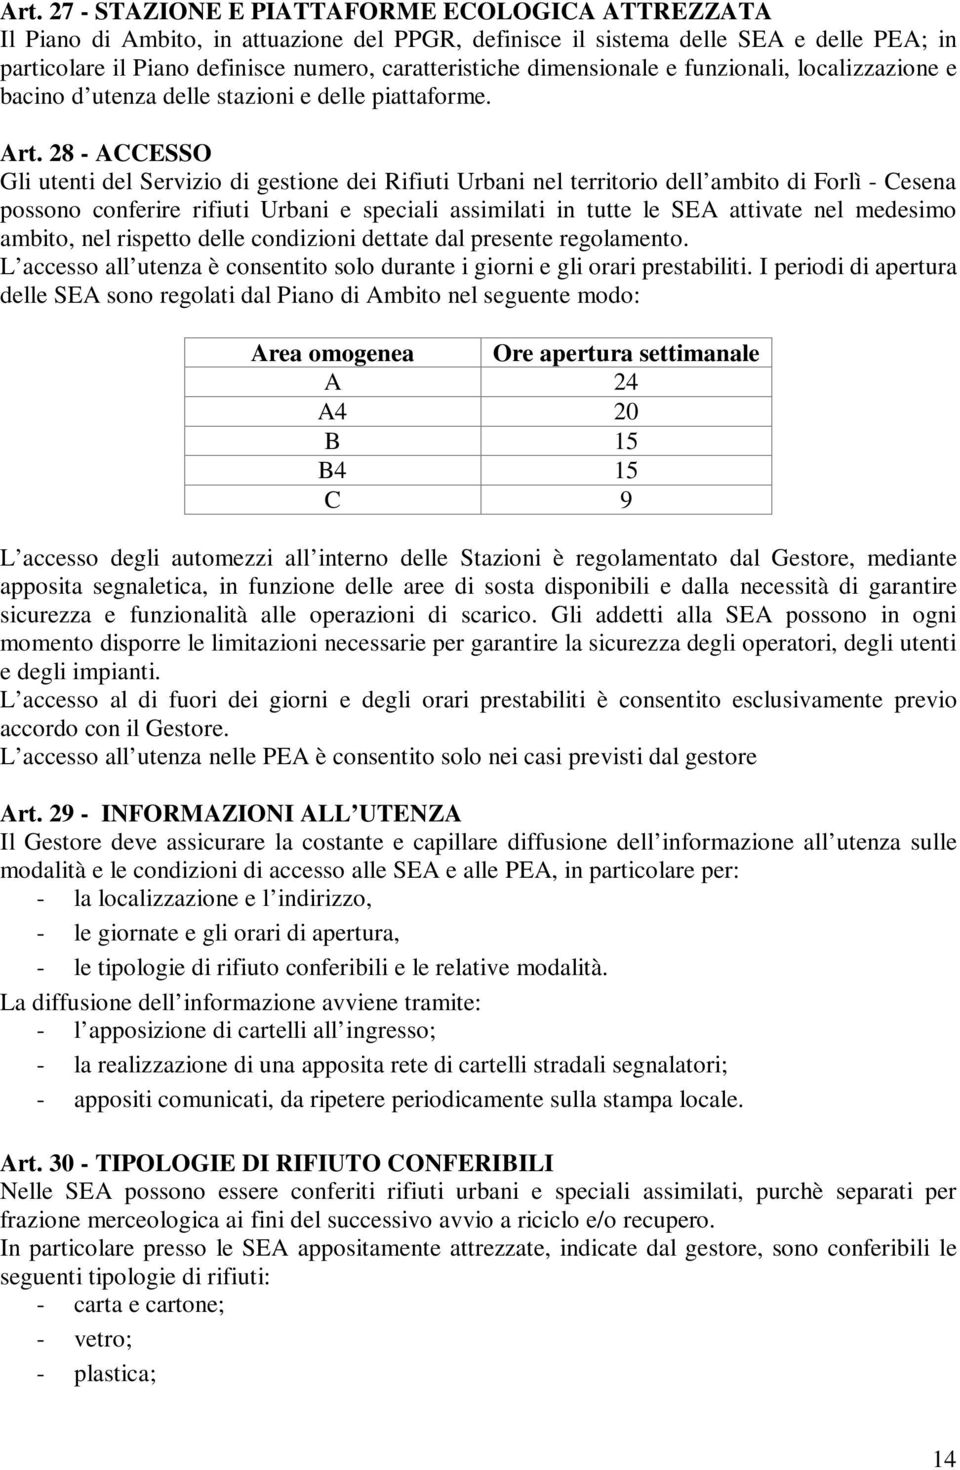 28 - ACCESSO Gli utenti del Servizio di gestione dei Rifiuti Urbani nel territorio dell ambito di Forlì - Cesena possono conferire rifiuti Urbani e speciali assimilati in tutte le SEA attivate nel